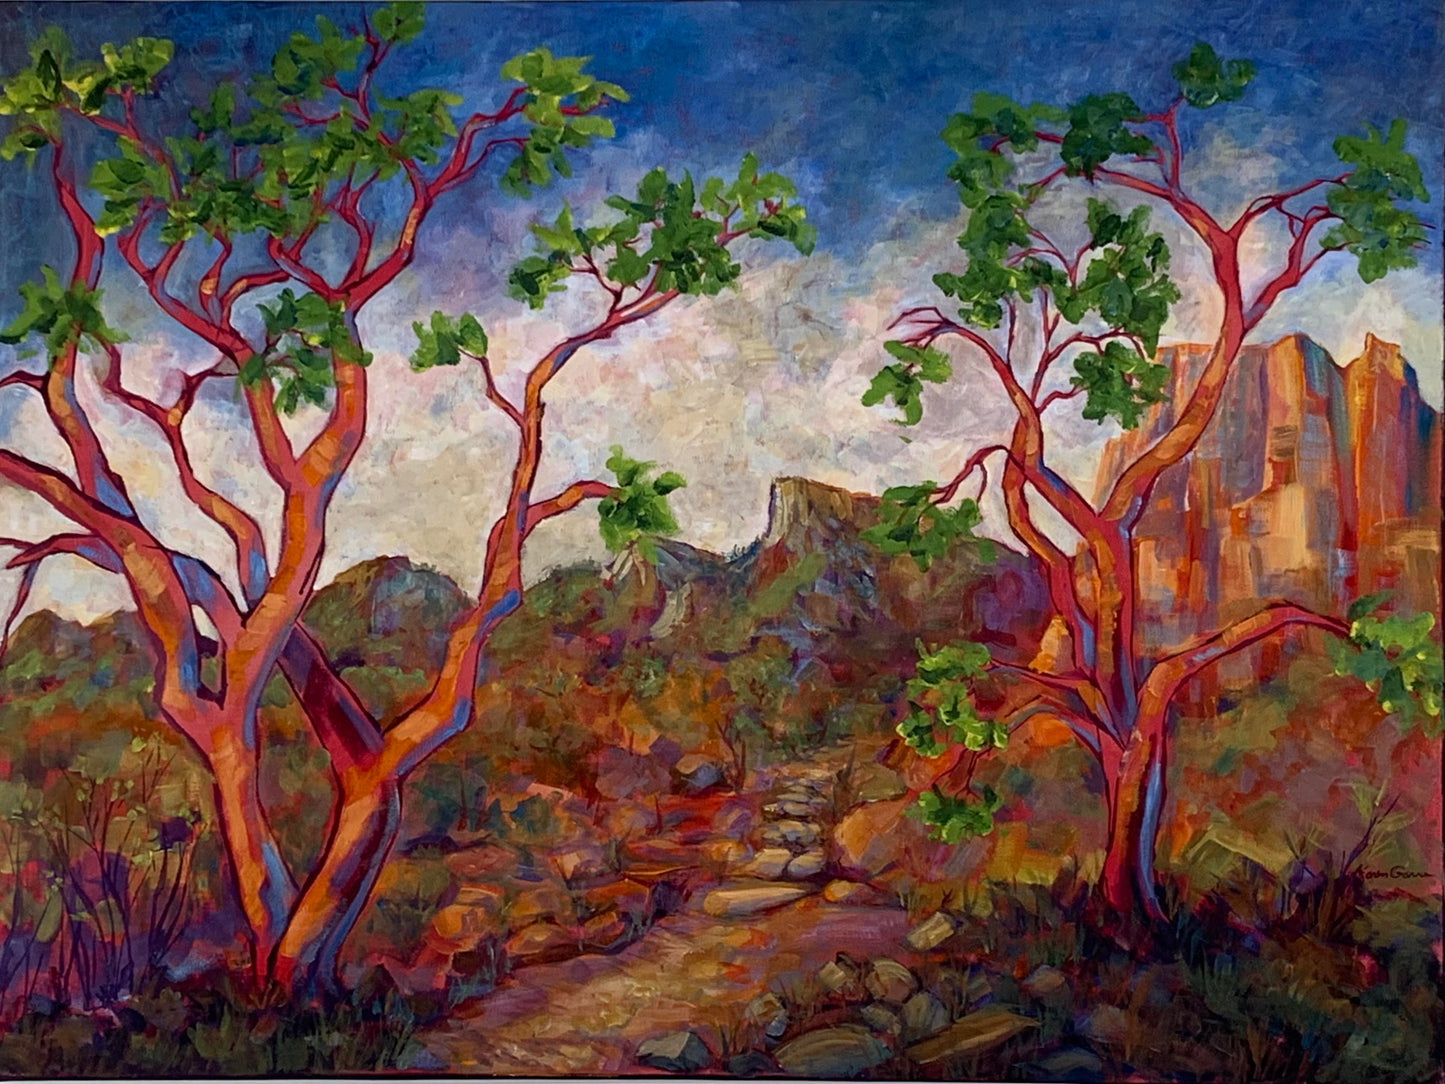 KarenG-Painting-"Mountain Path"30x40